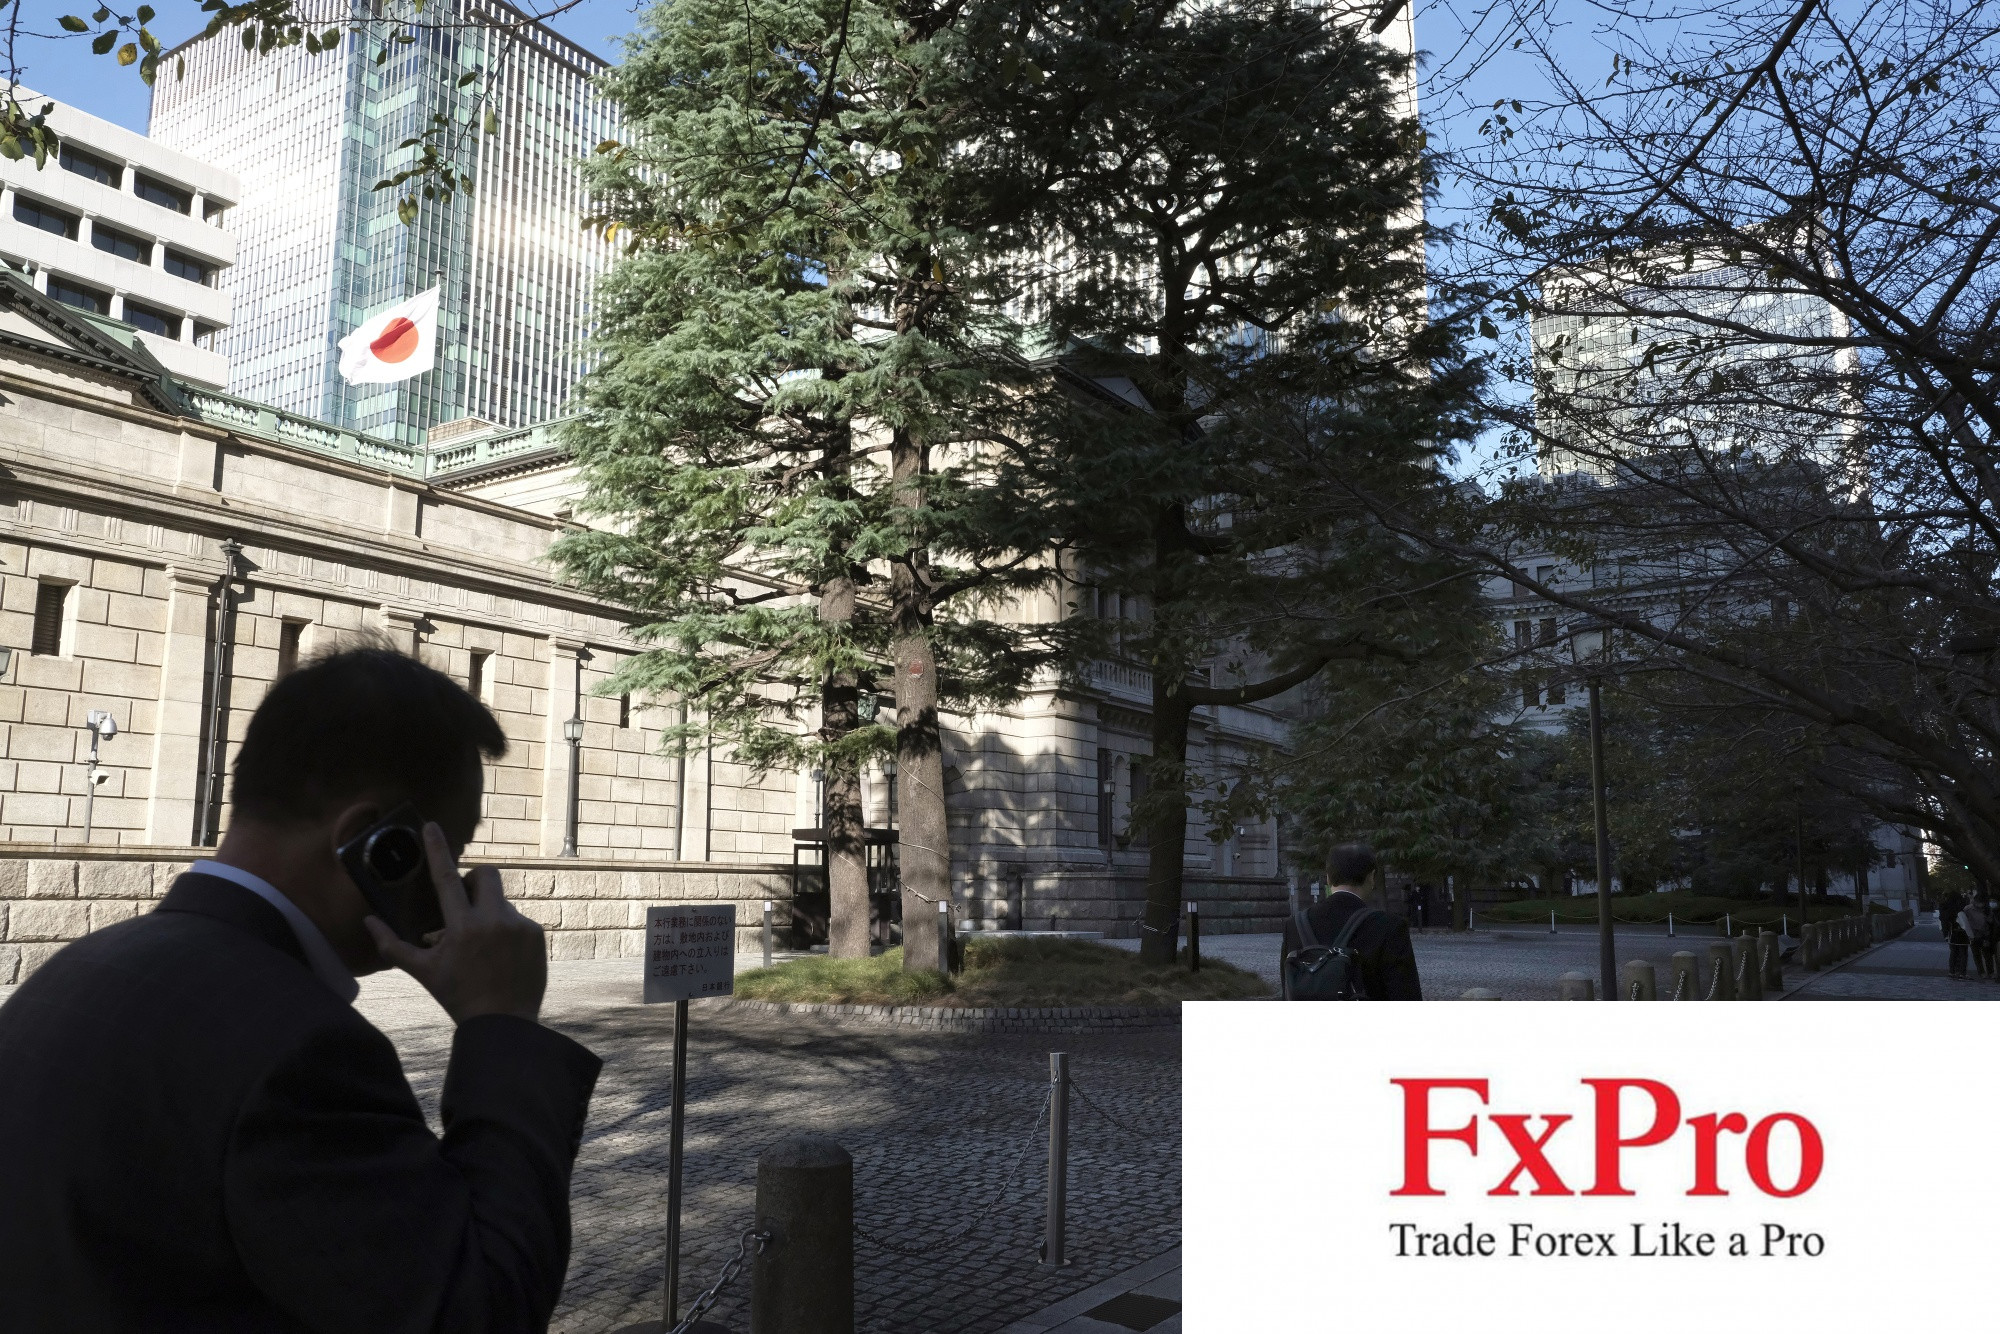 Tăng trưởng tiền lương chững lại: Bài toán khó đối với BoJ